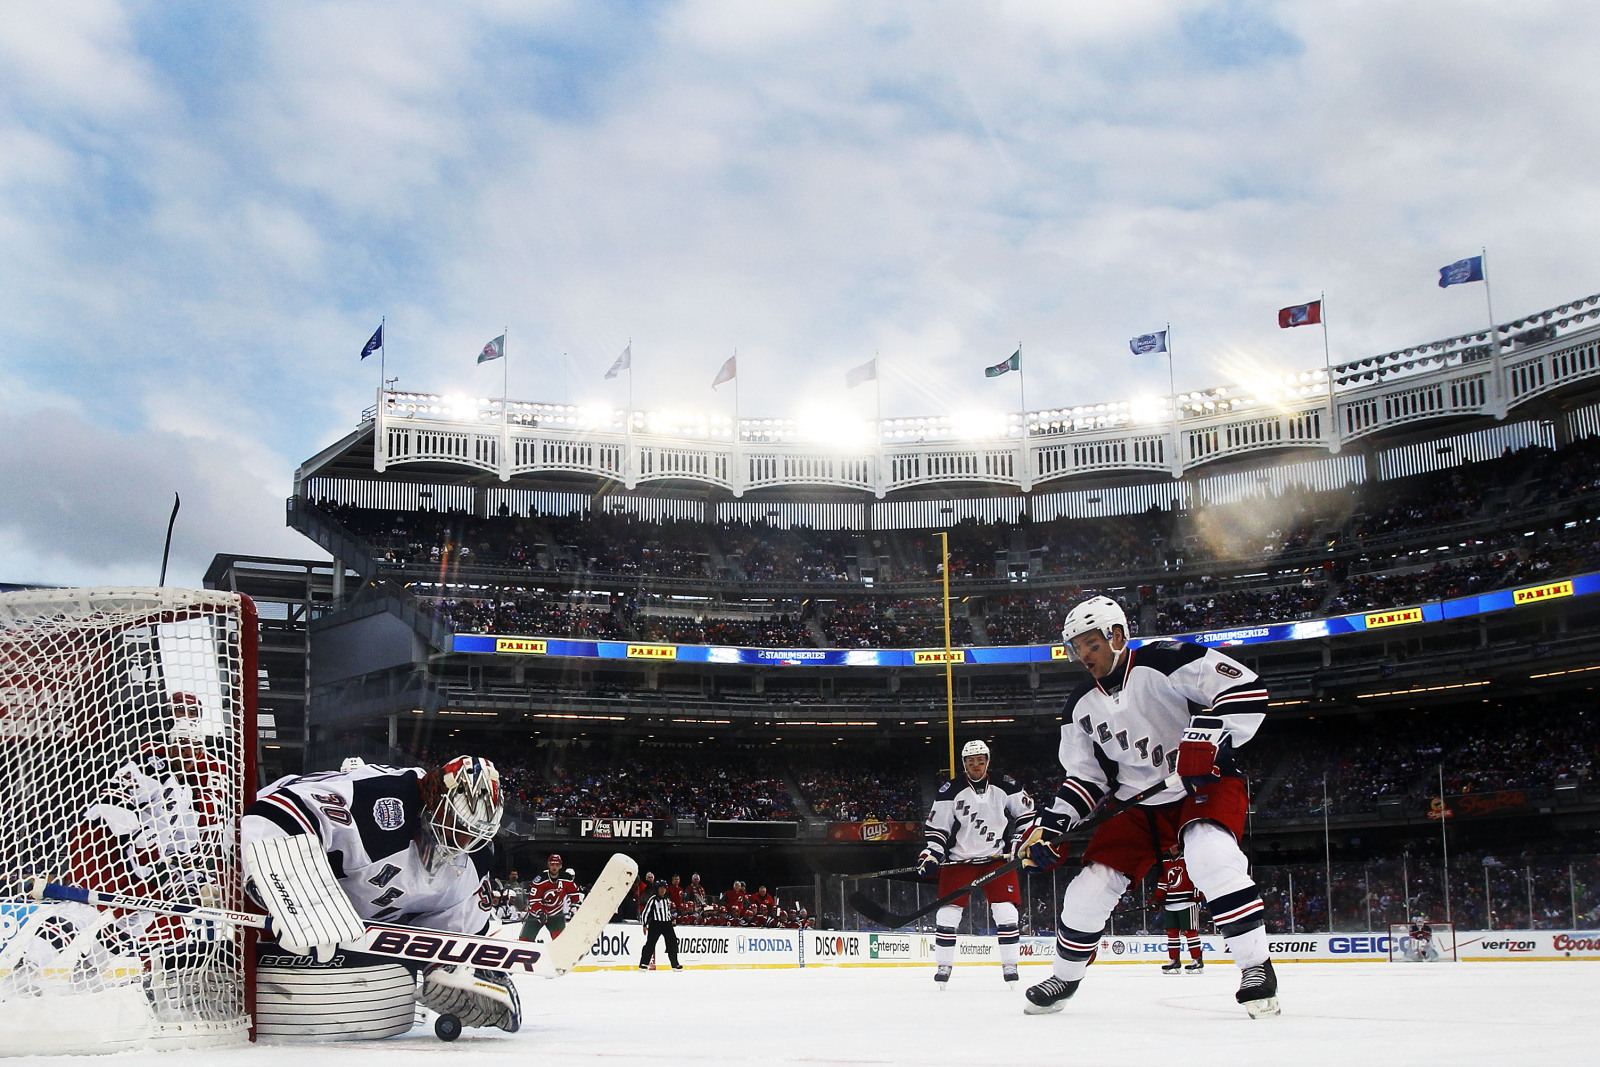  NHL New York Rangers 2014 Stadium Series Devils vs